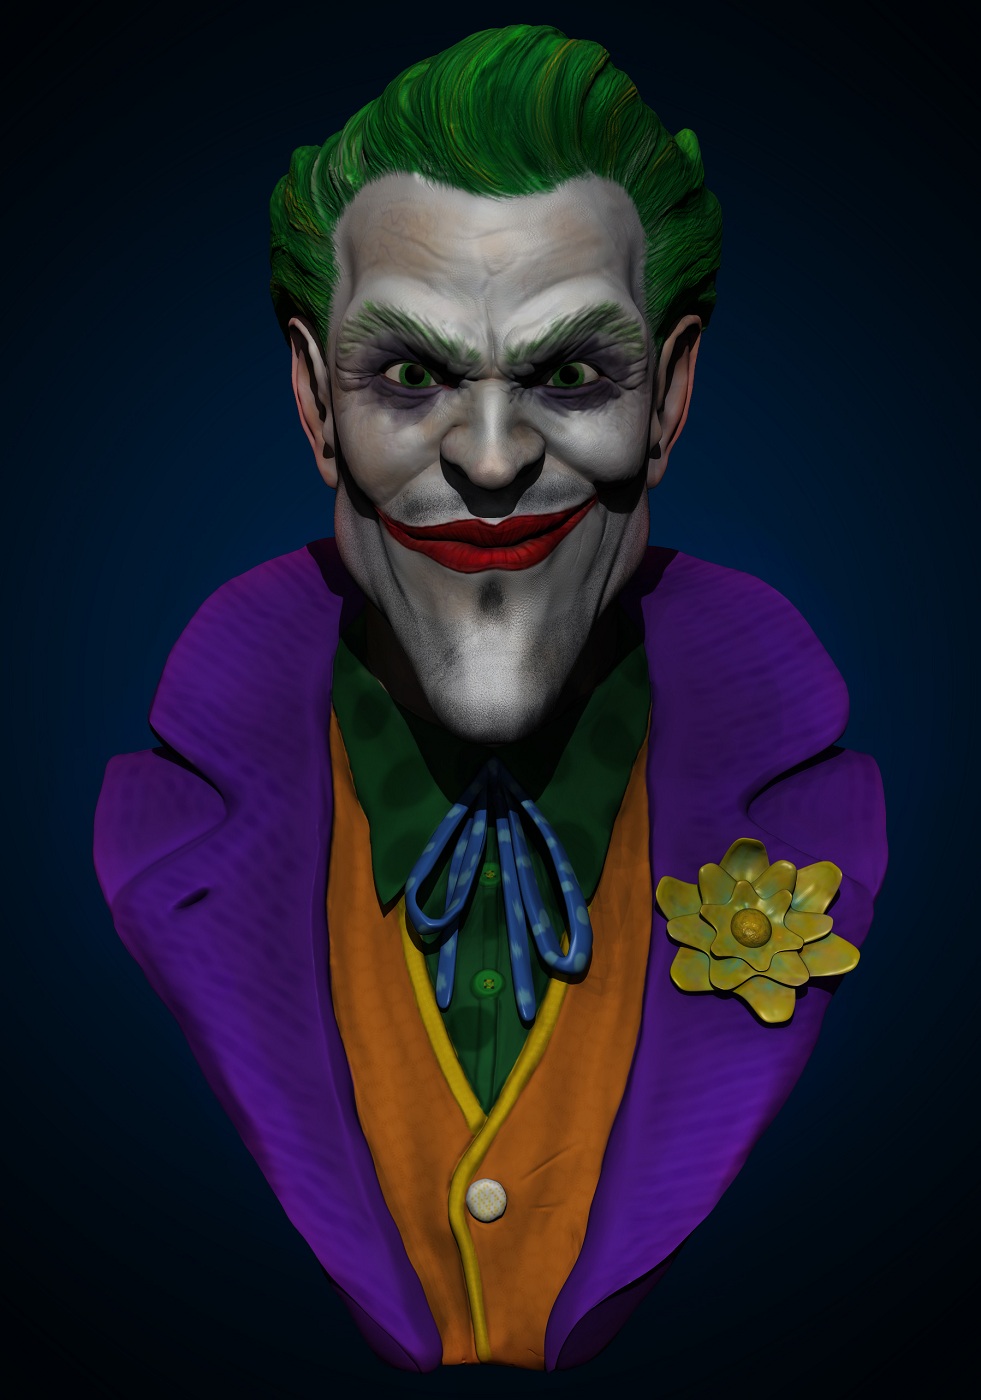 The Joker Final Comp CROP (1400).jpg